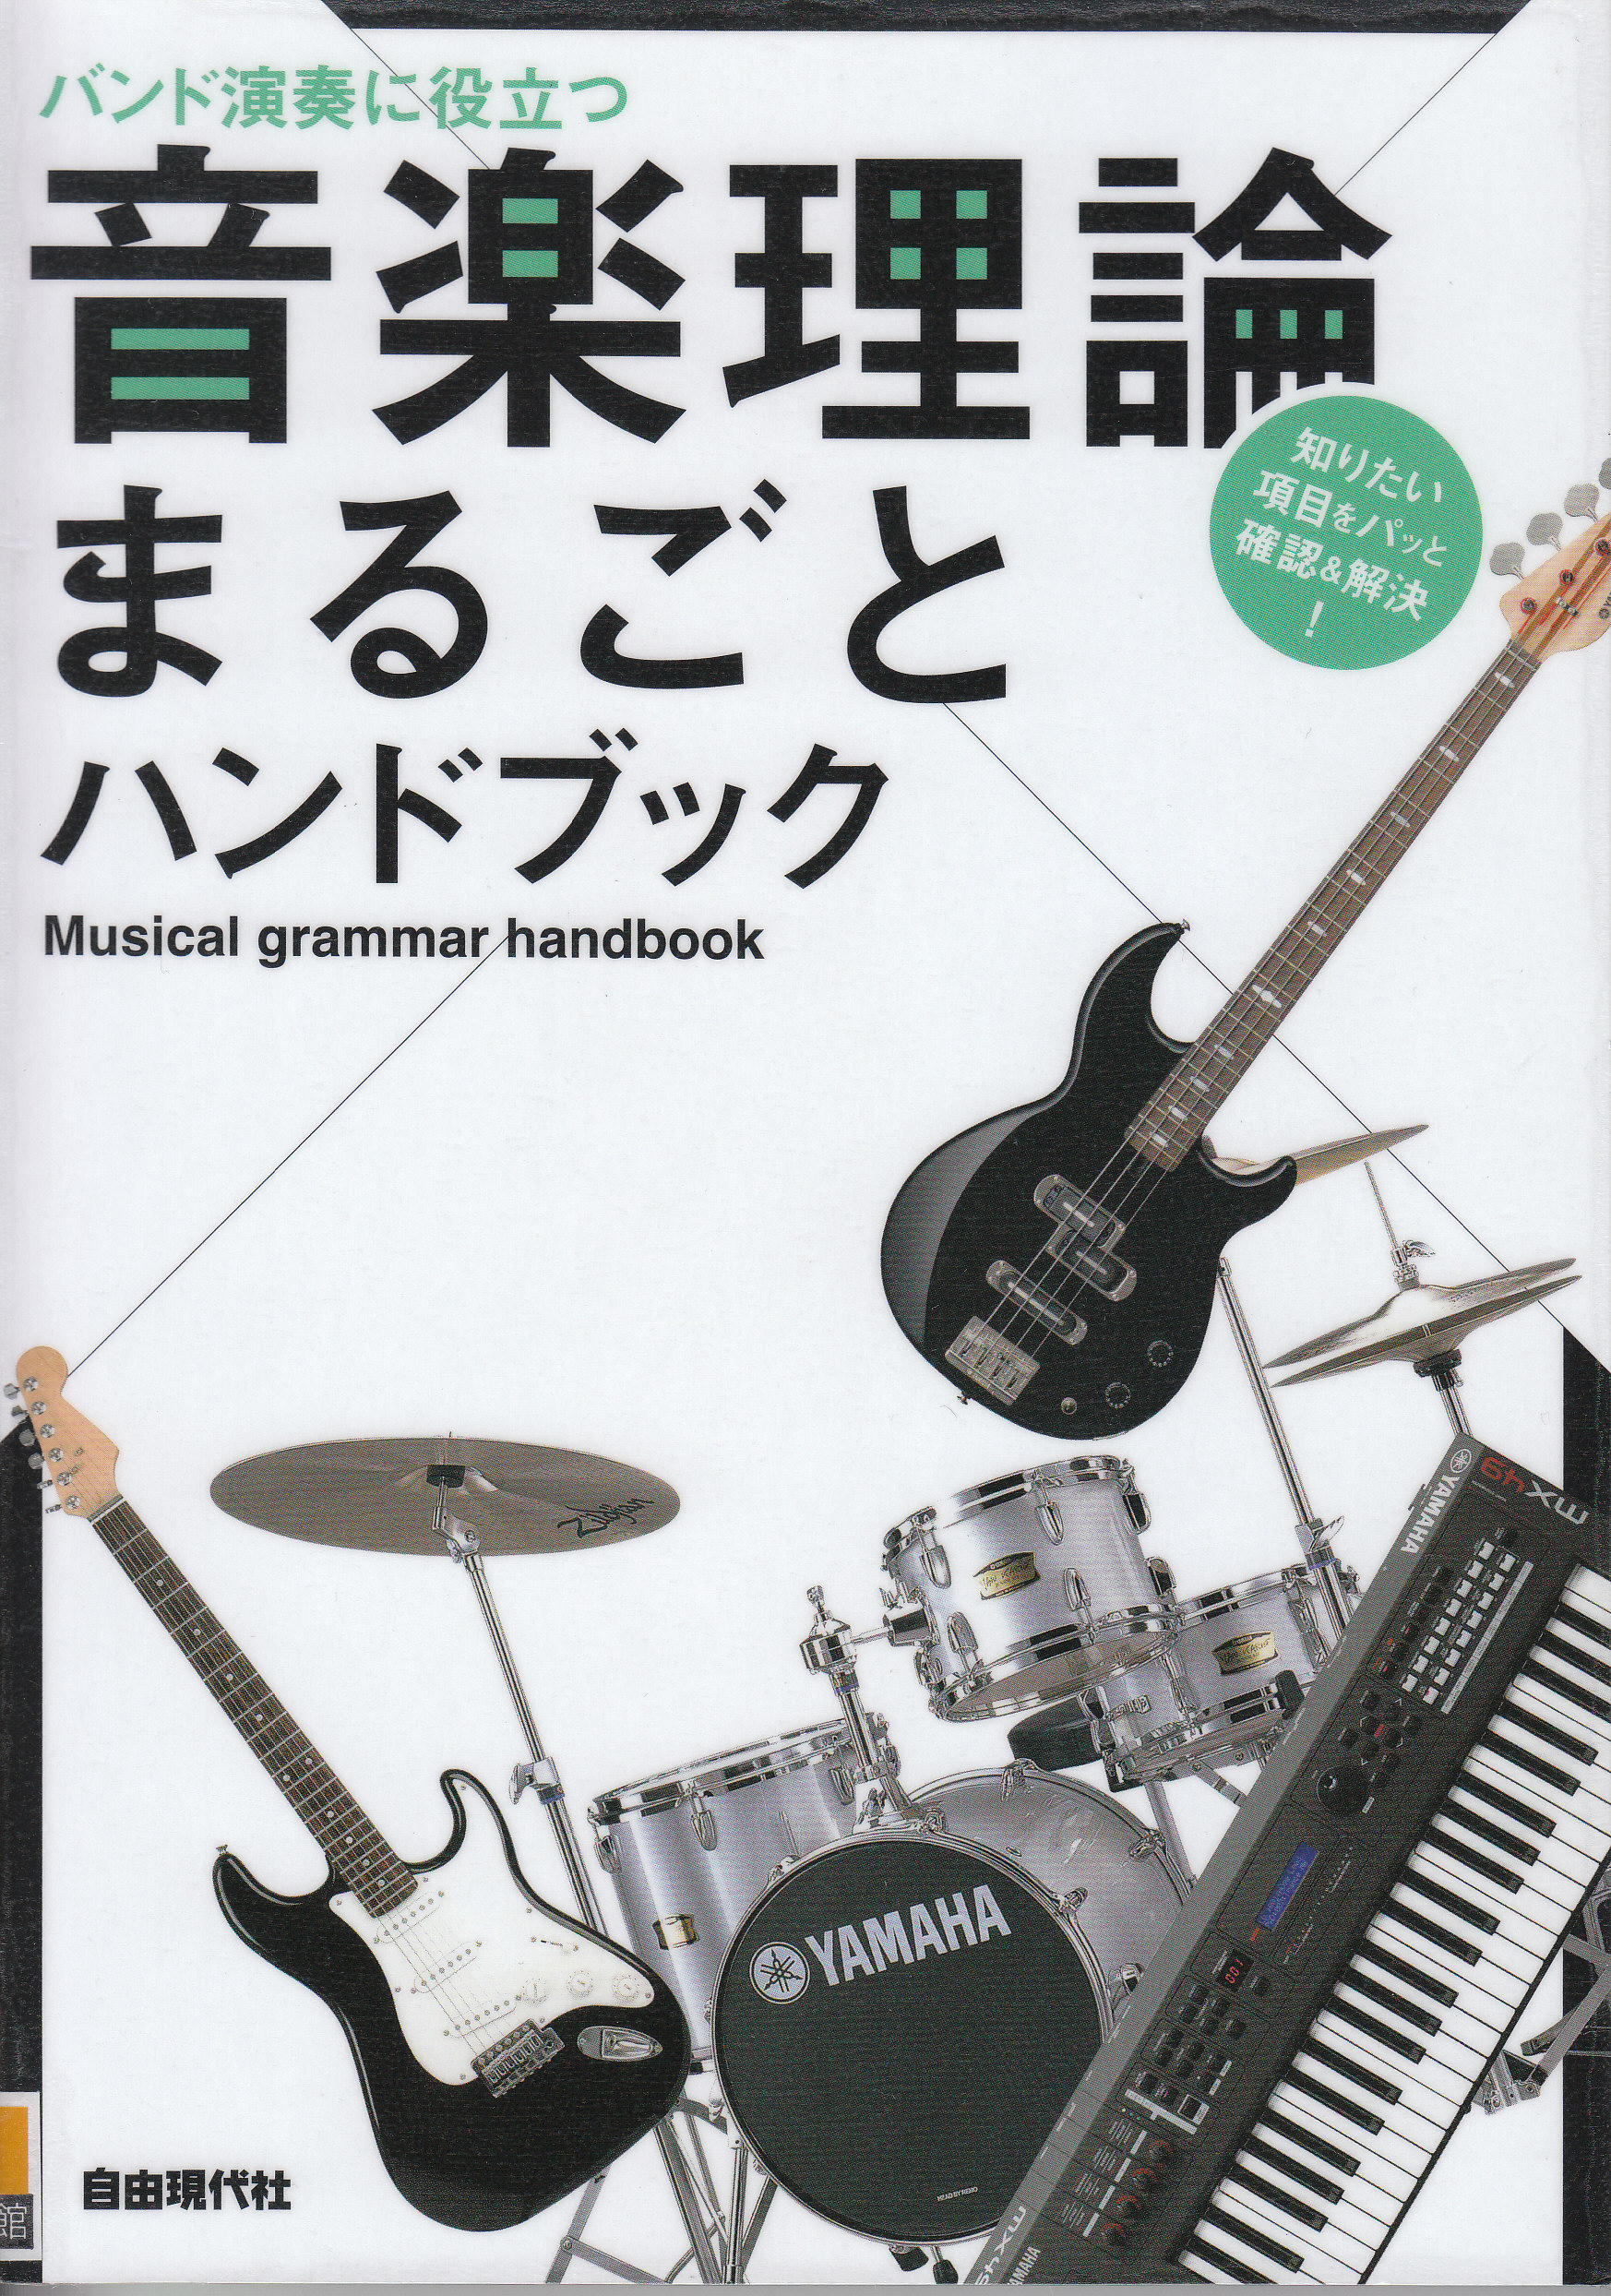 「バンド演奏に役立つ音楽理論まるごとハンドブック」表紙写真